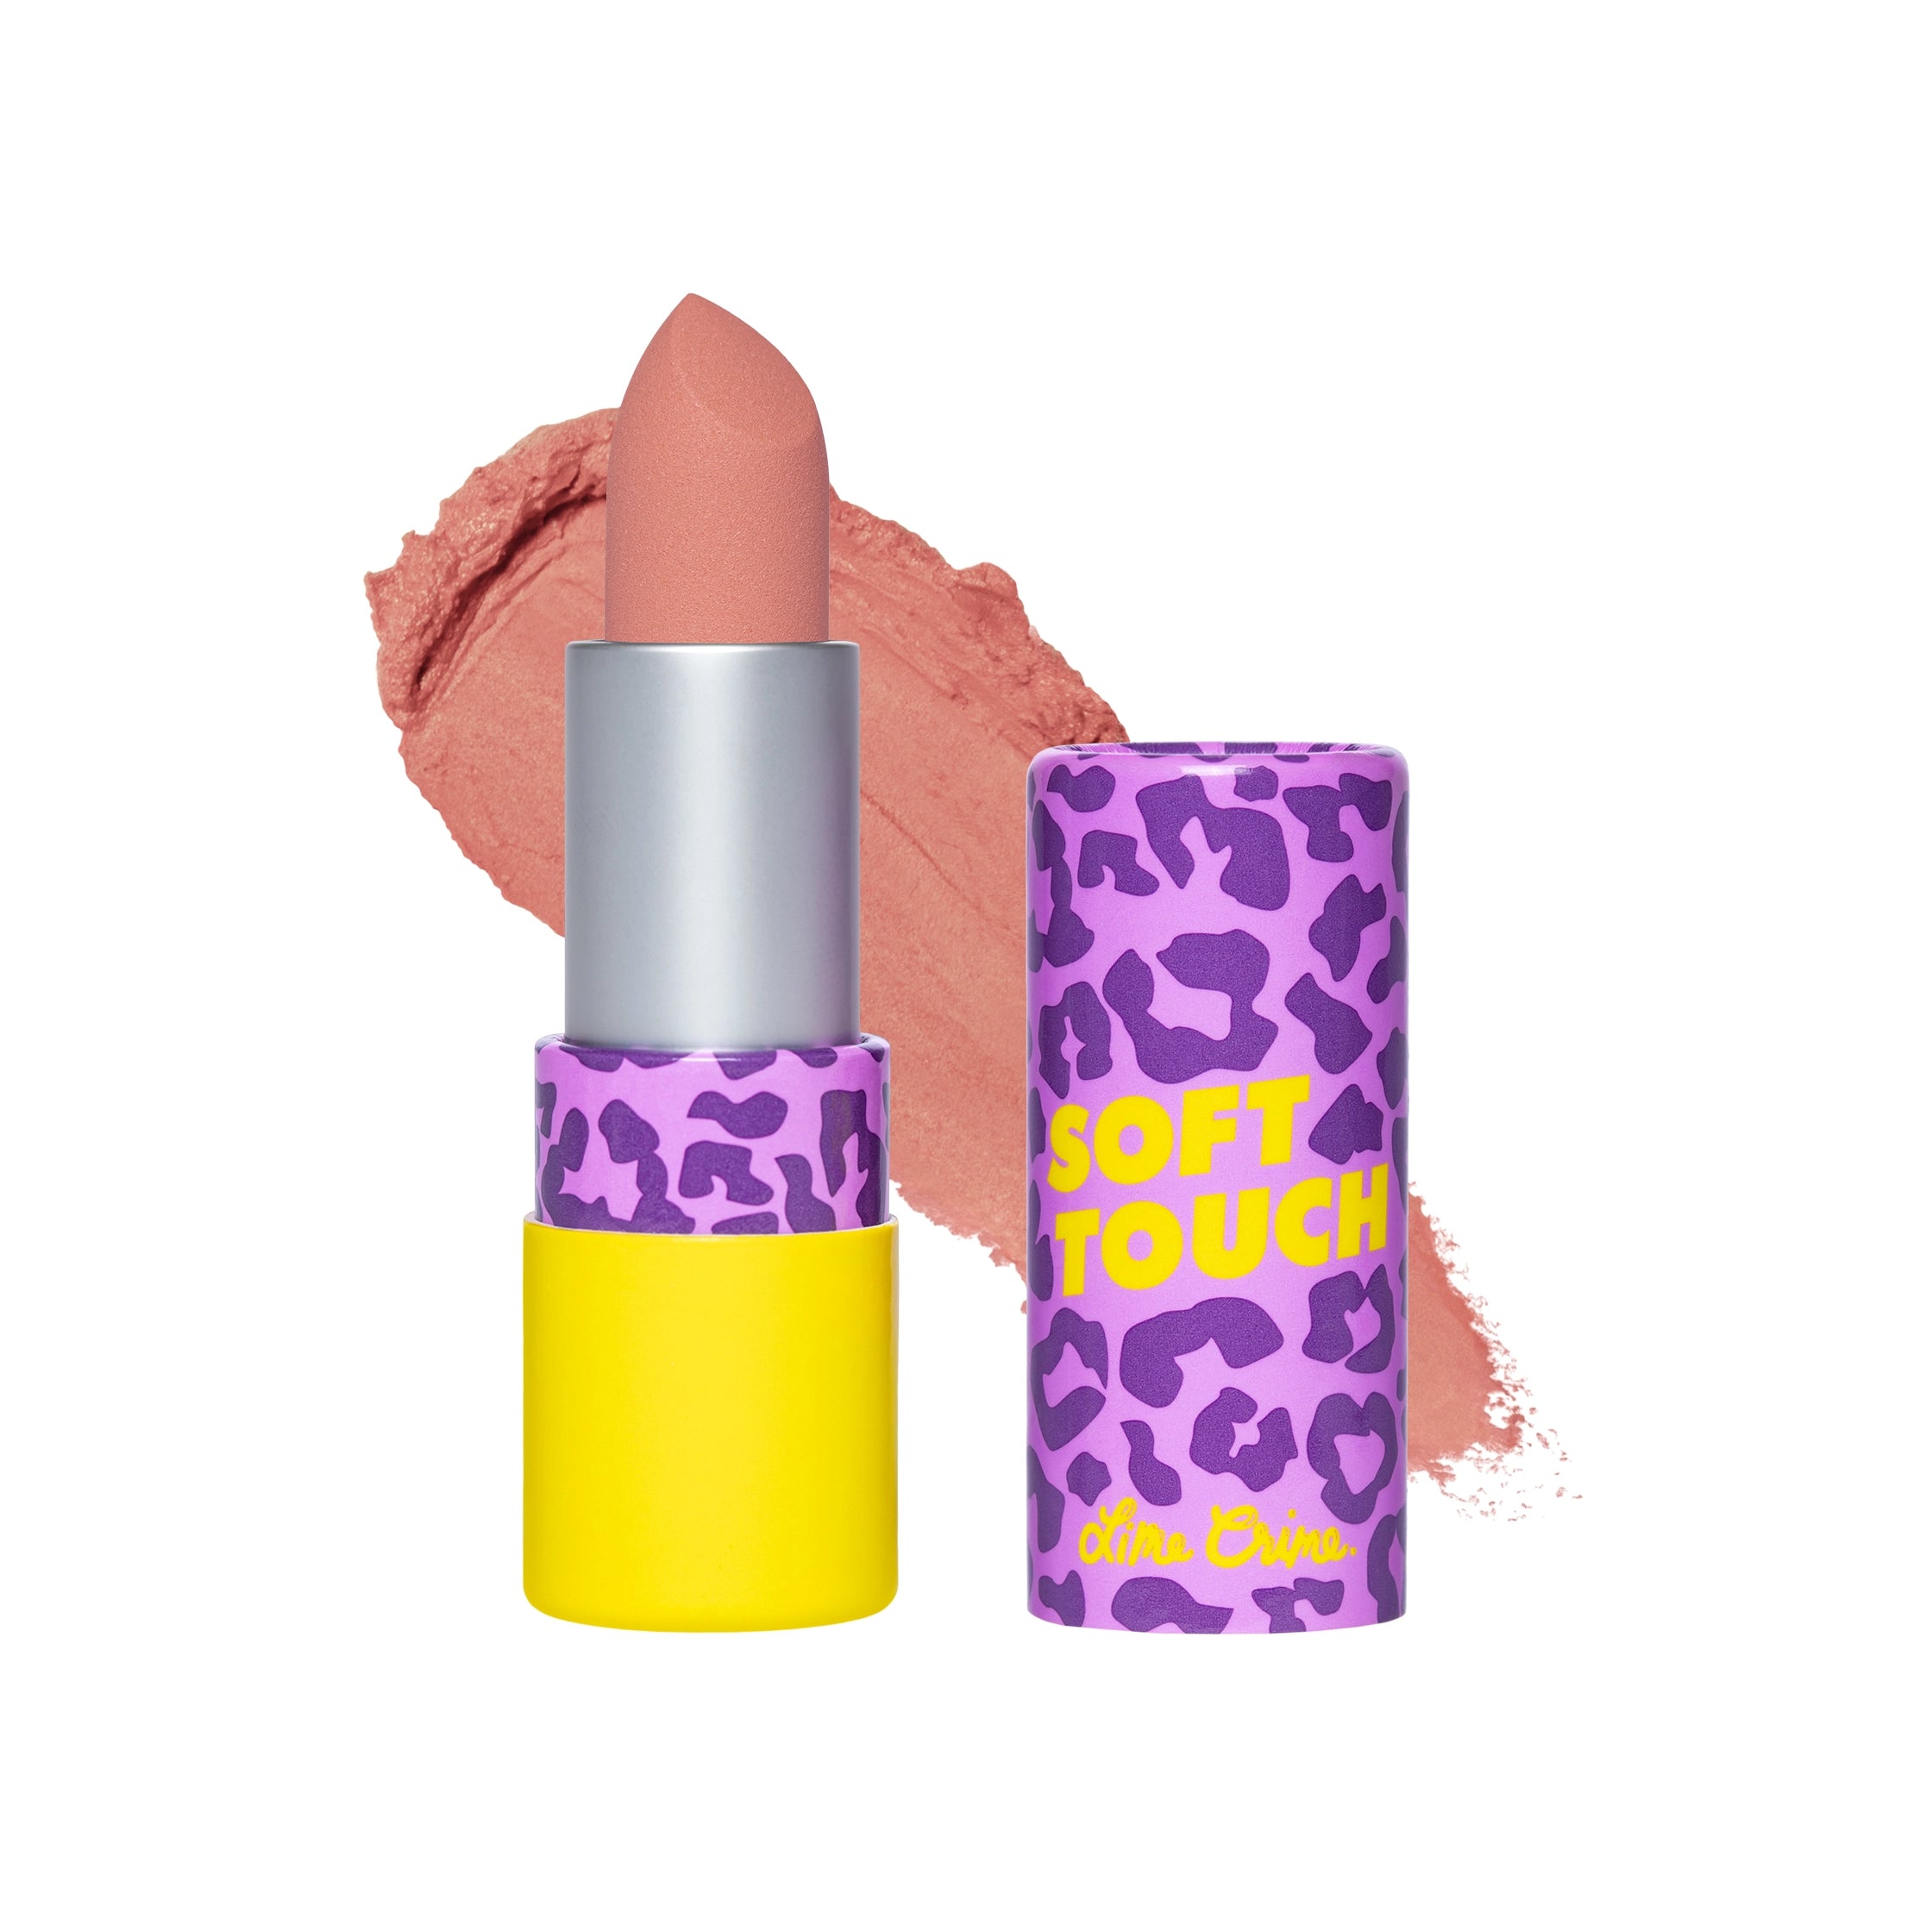 Soft Touch Lipstick variant:Stellar Pink